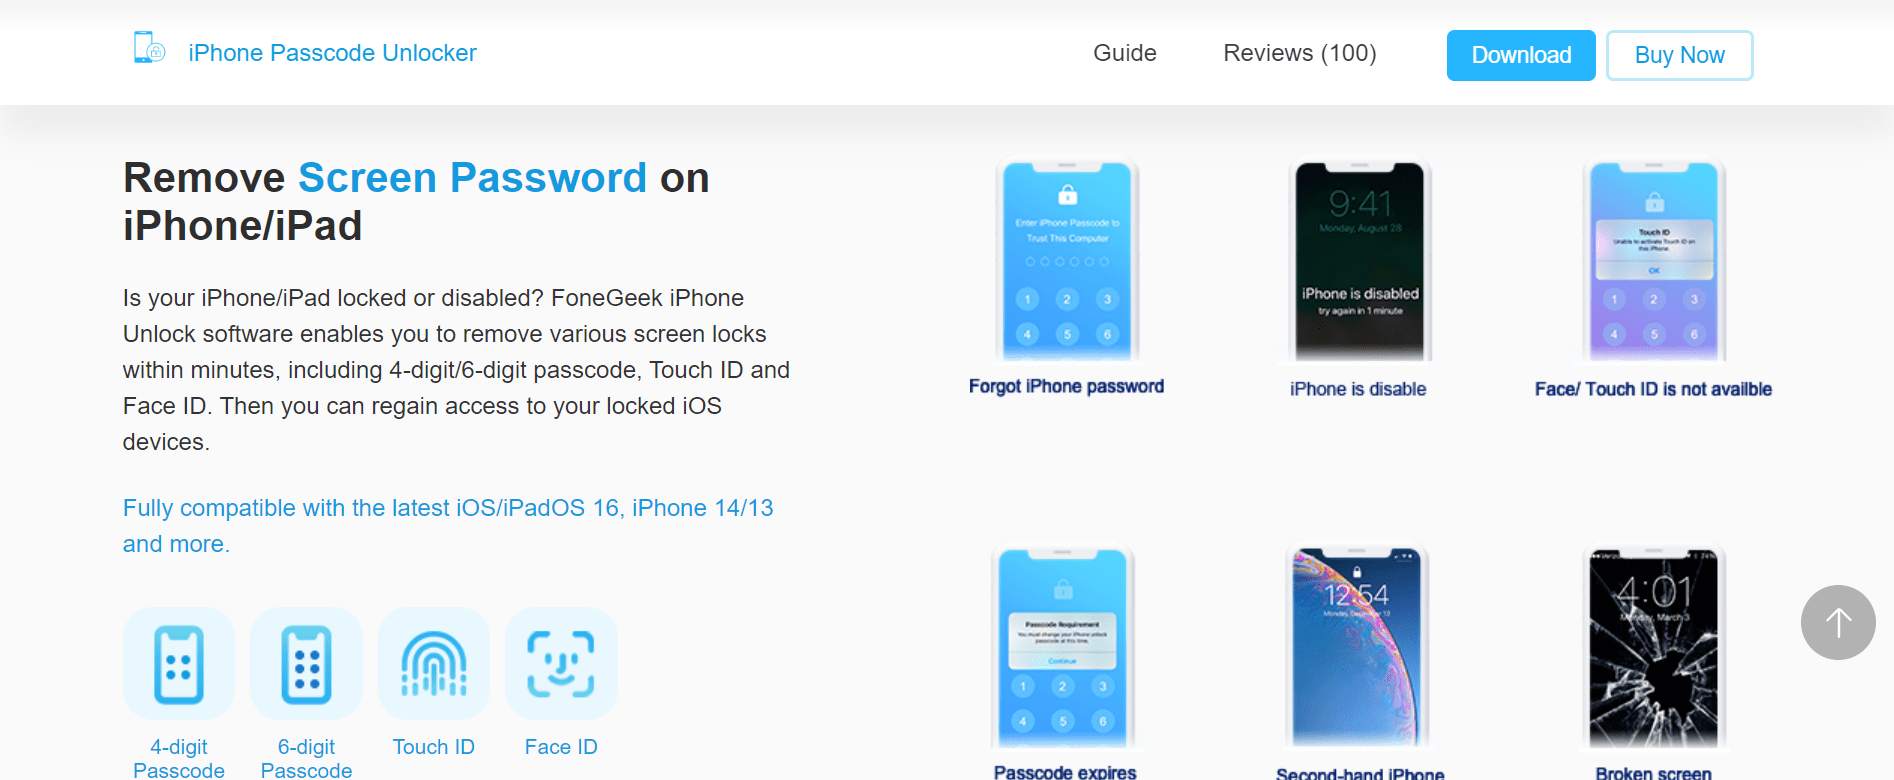 FoneGeek iPhone Passcode Unlocker features